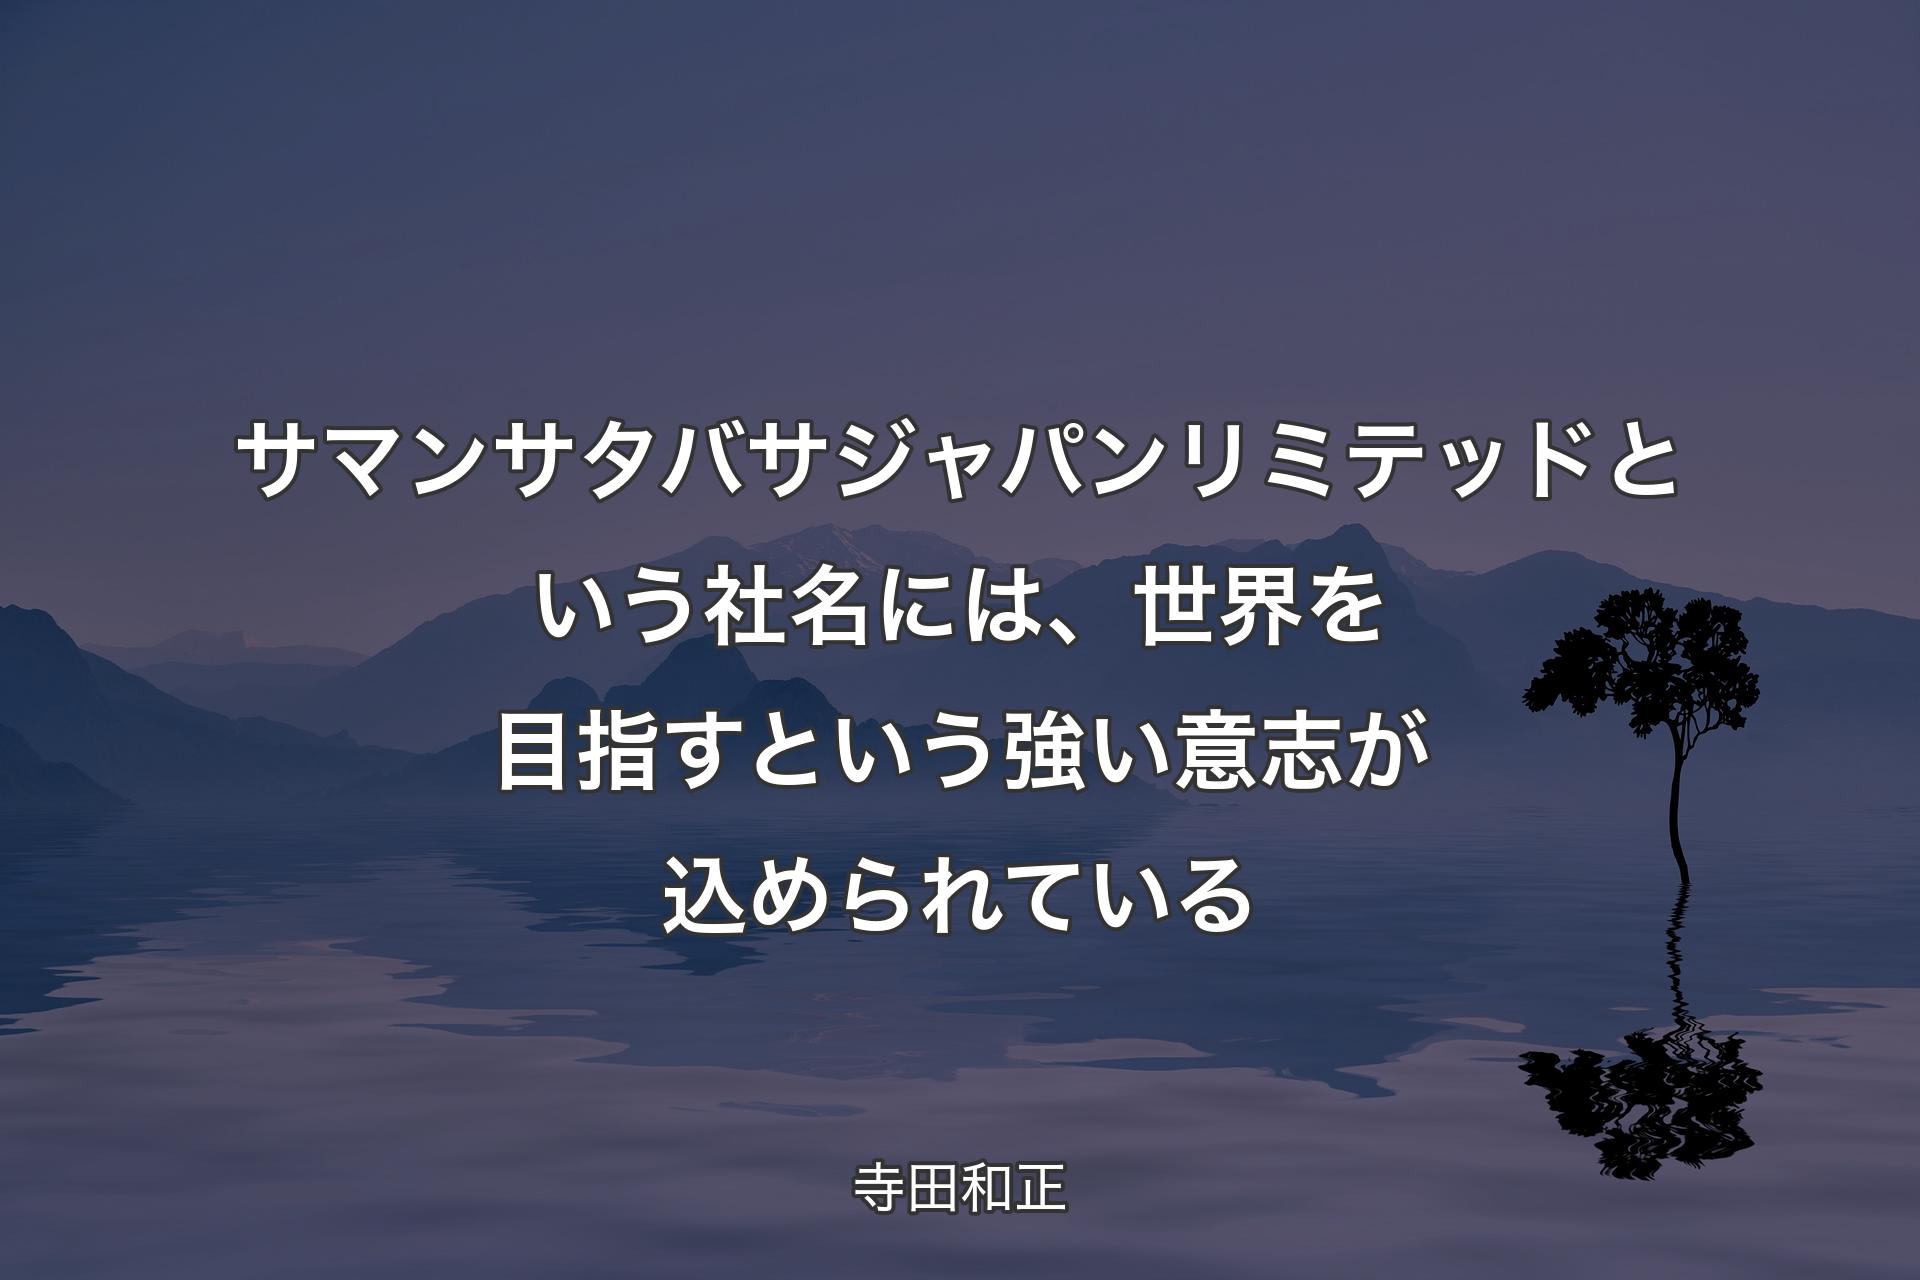 【背景4】サマンサタバサジャパンリミテッドという社名には、世界を目指すという強い意志が込められている - 寺田和正